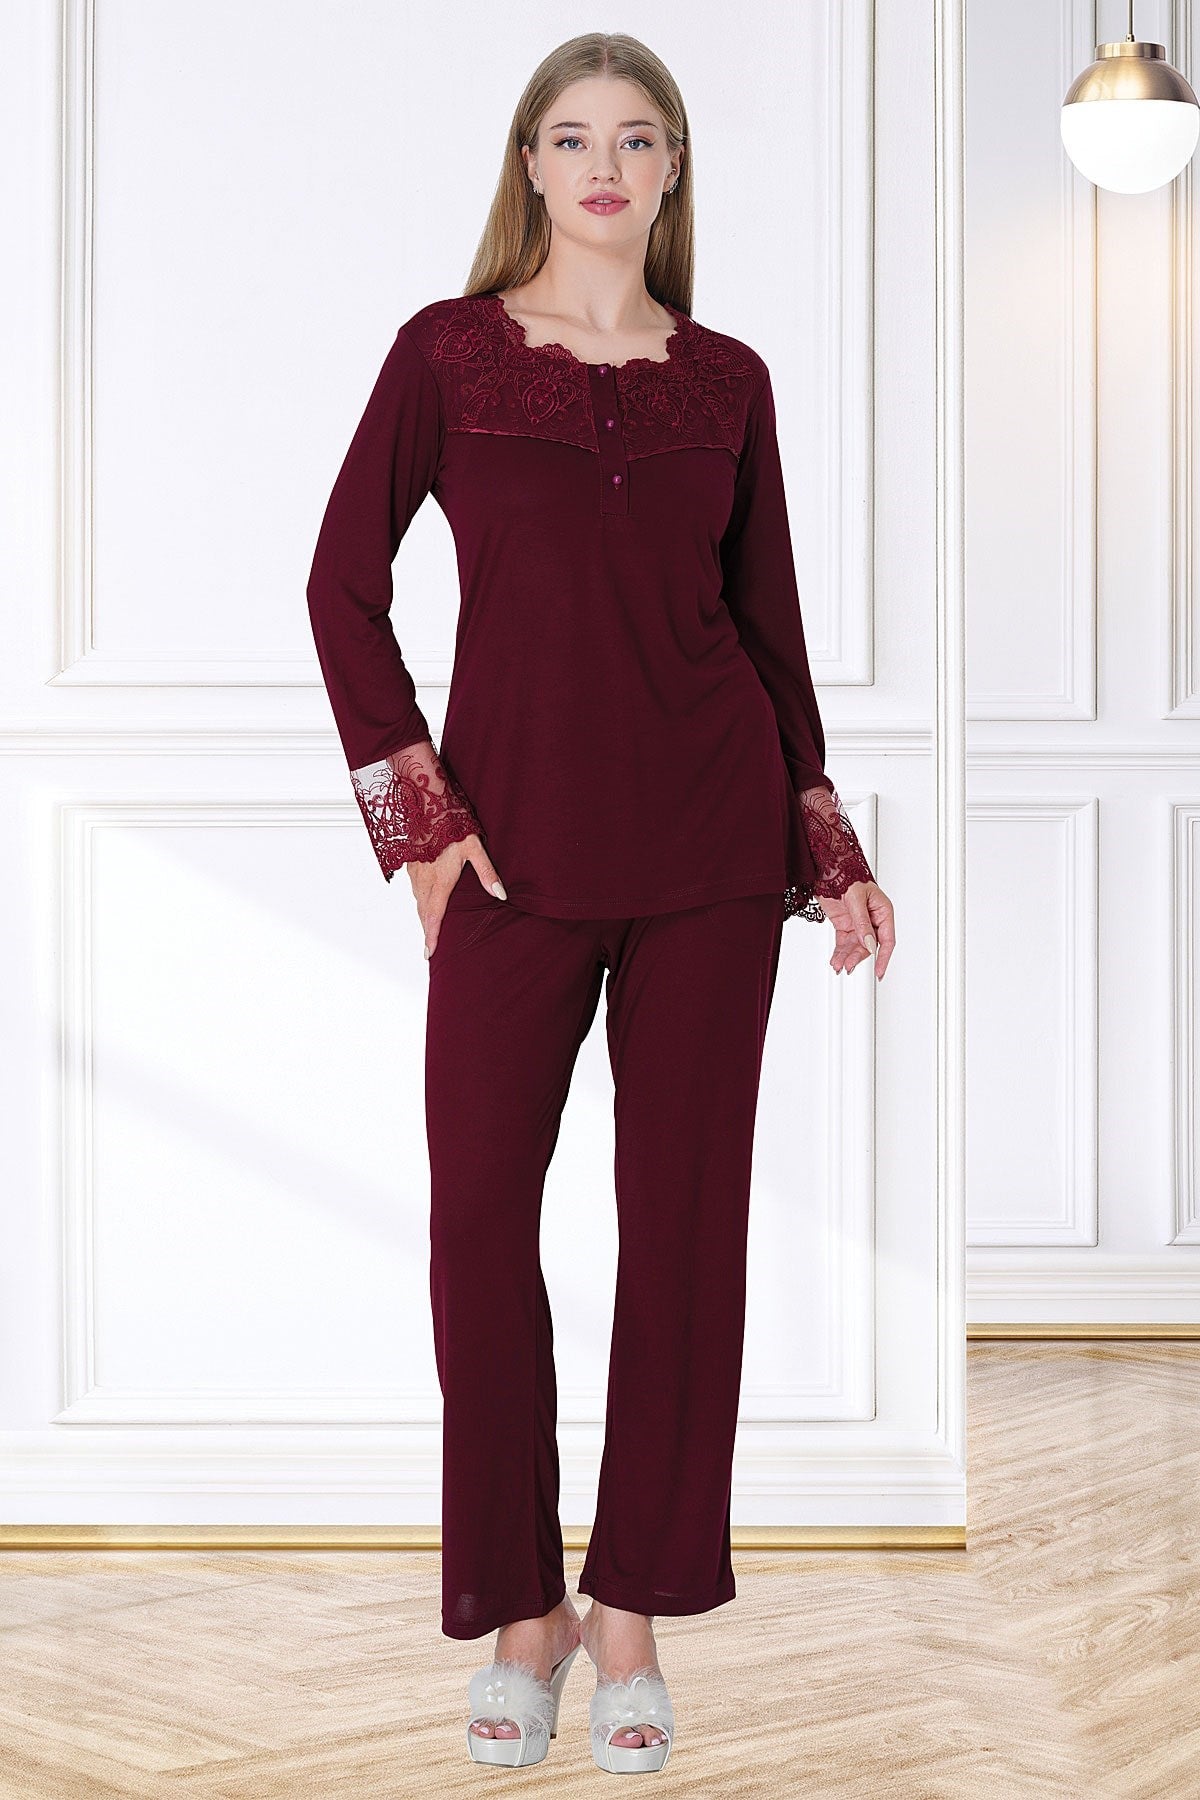 Shopymommy 5720 Lace Maternity & Nursing Pajamas Claret Red